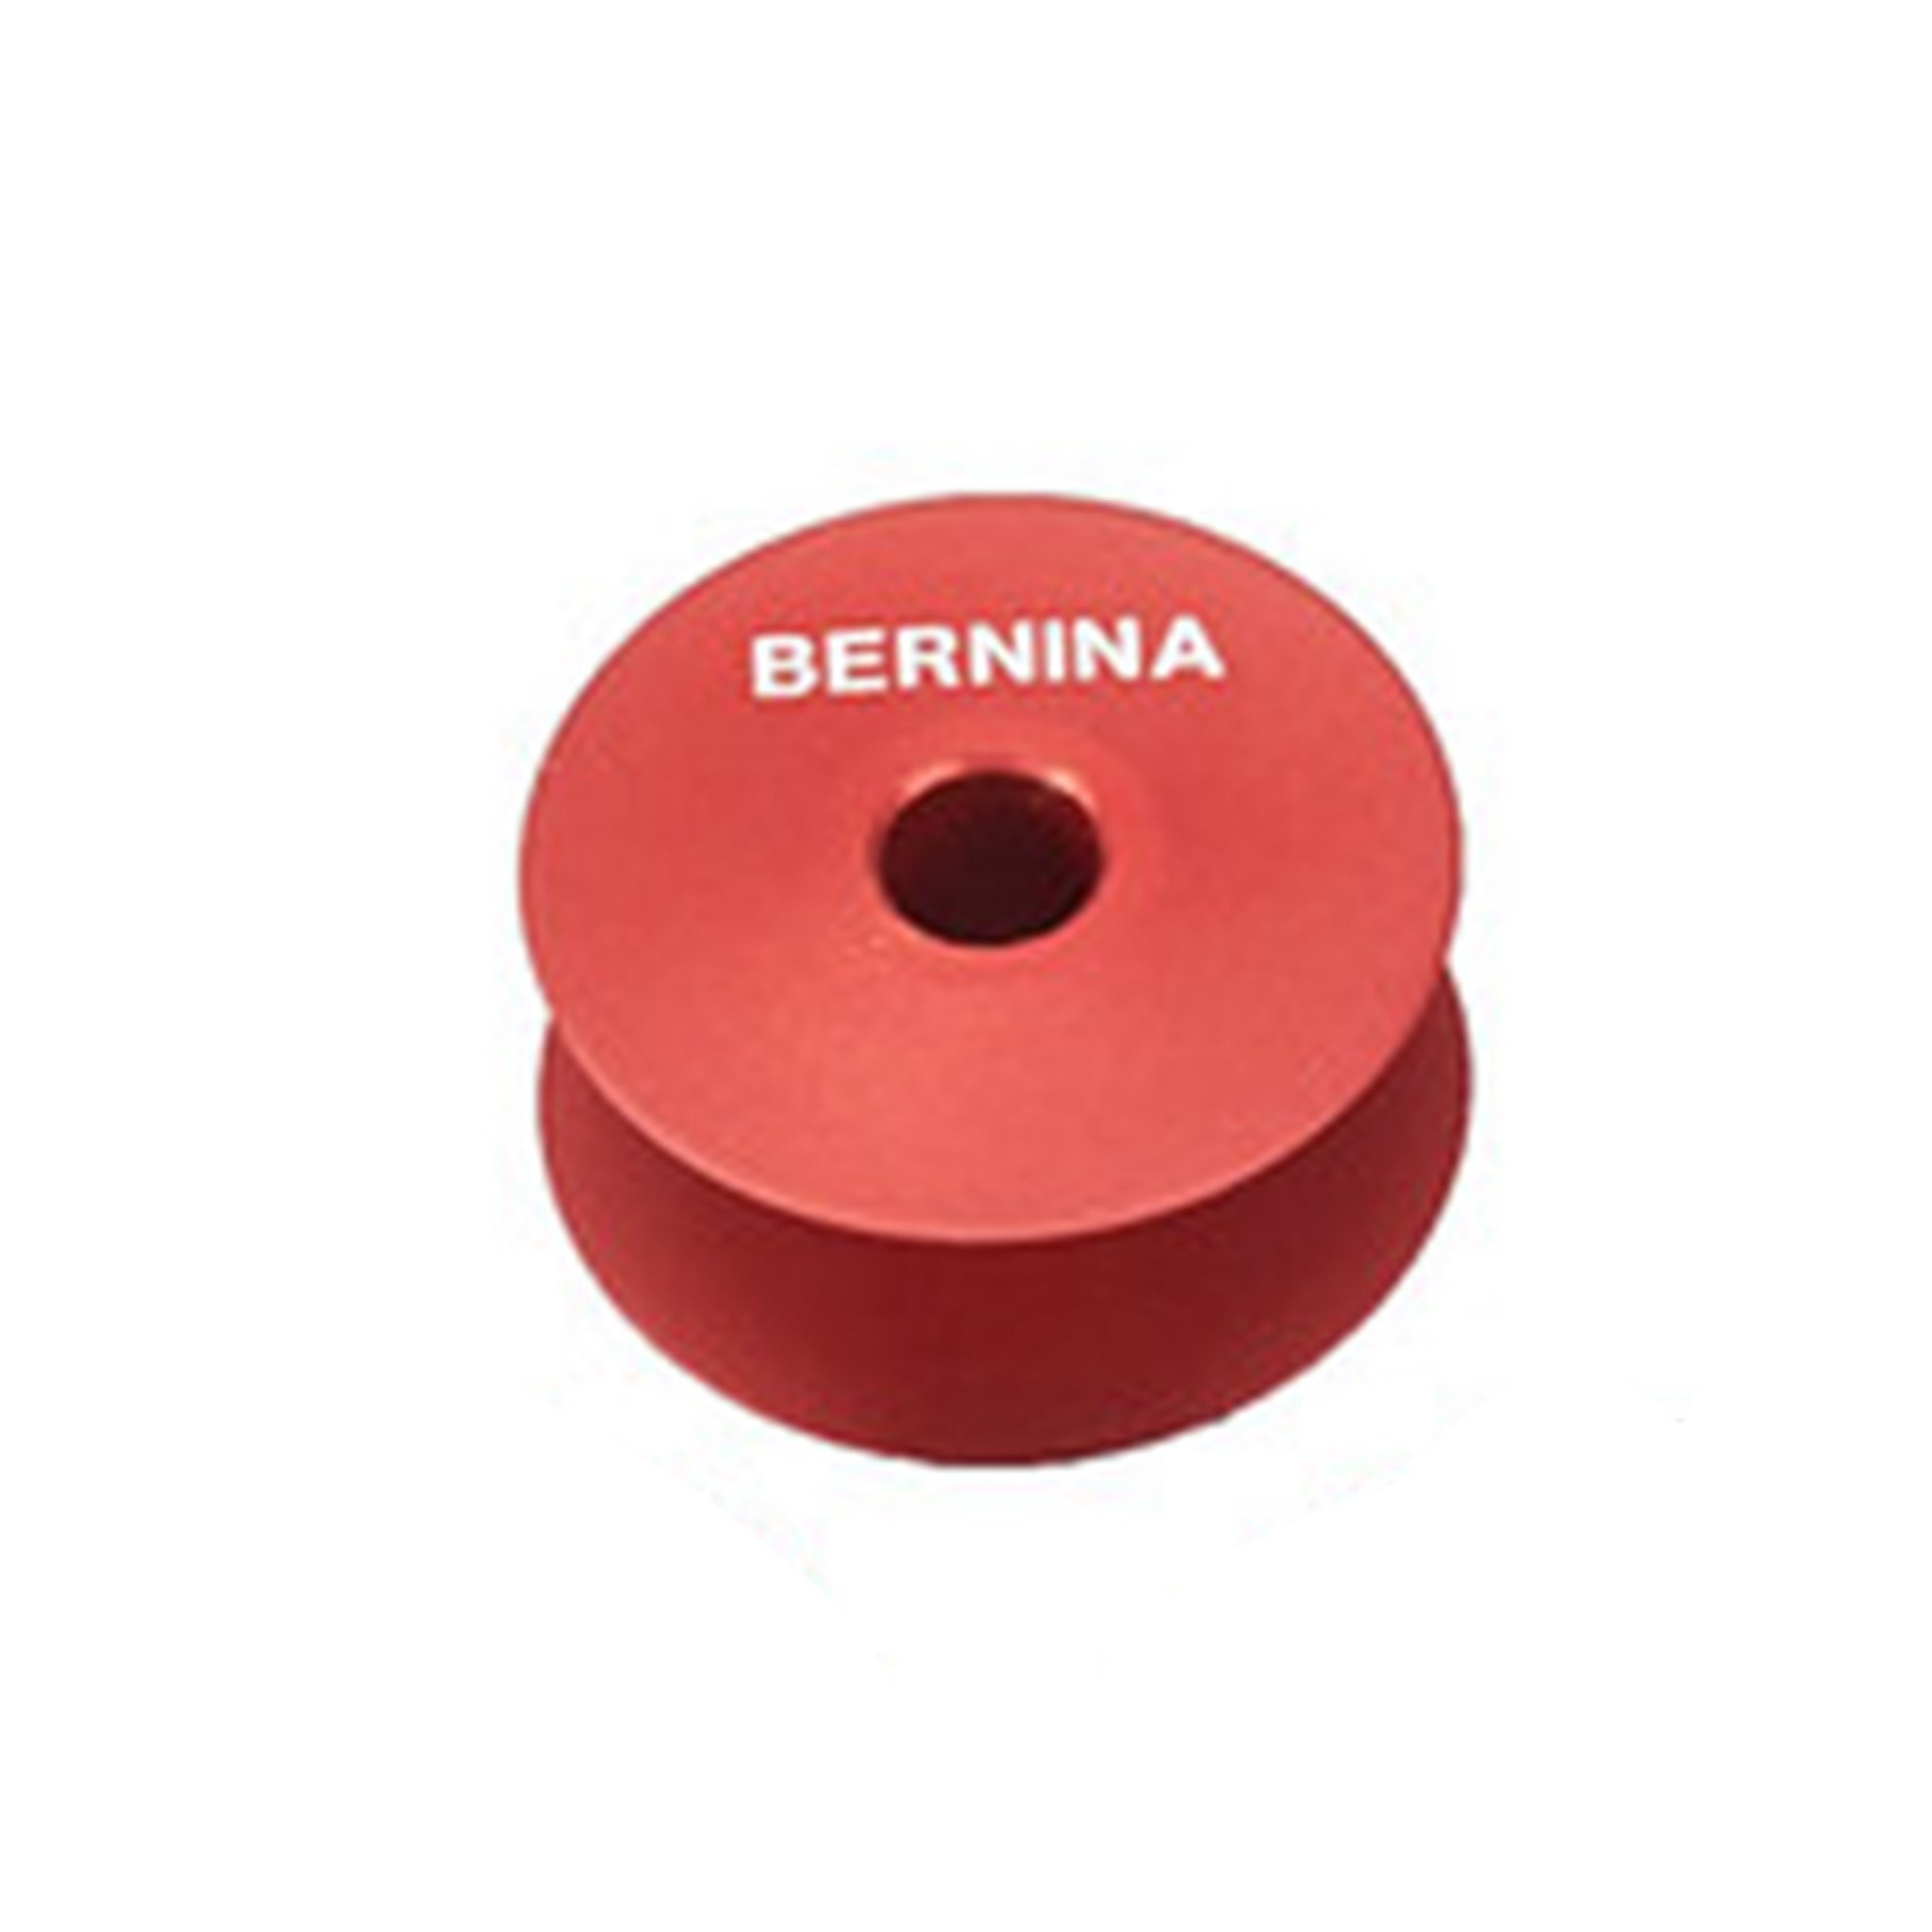 BERNINA Bernina Q Series Longarm Bobbin M Class (Each)